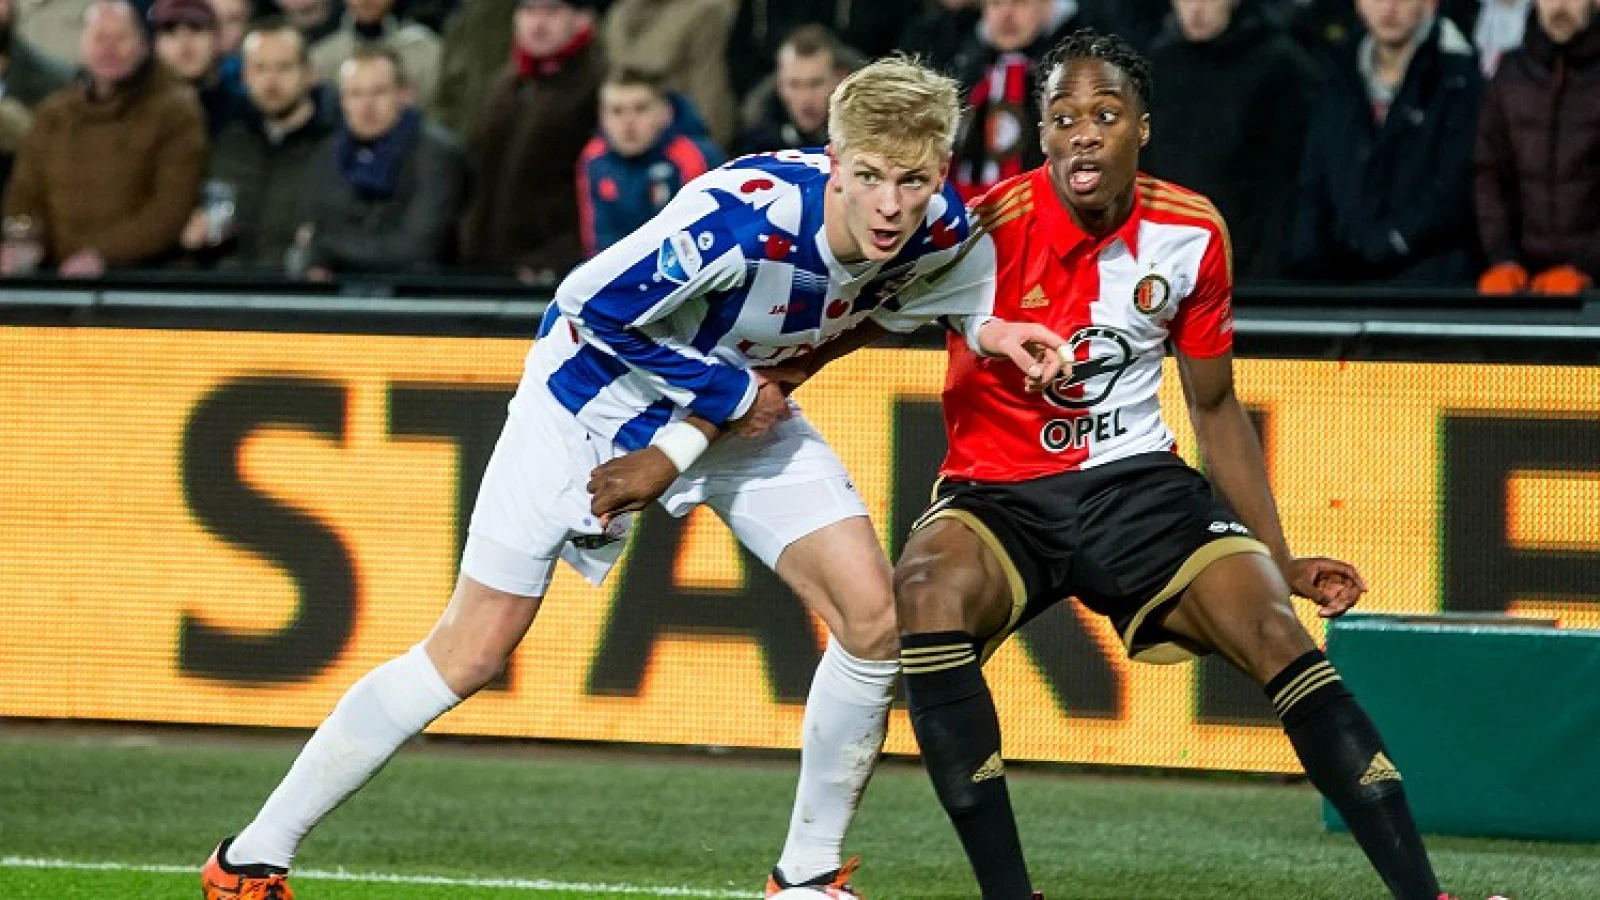 LIVE | Feyenoord - sc Heerenveen 1-2 | Einde wedstrijd